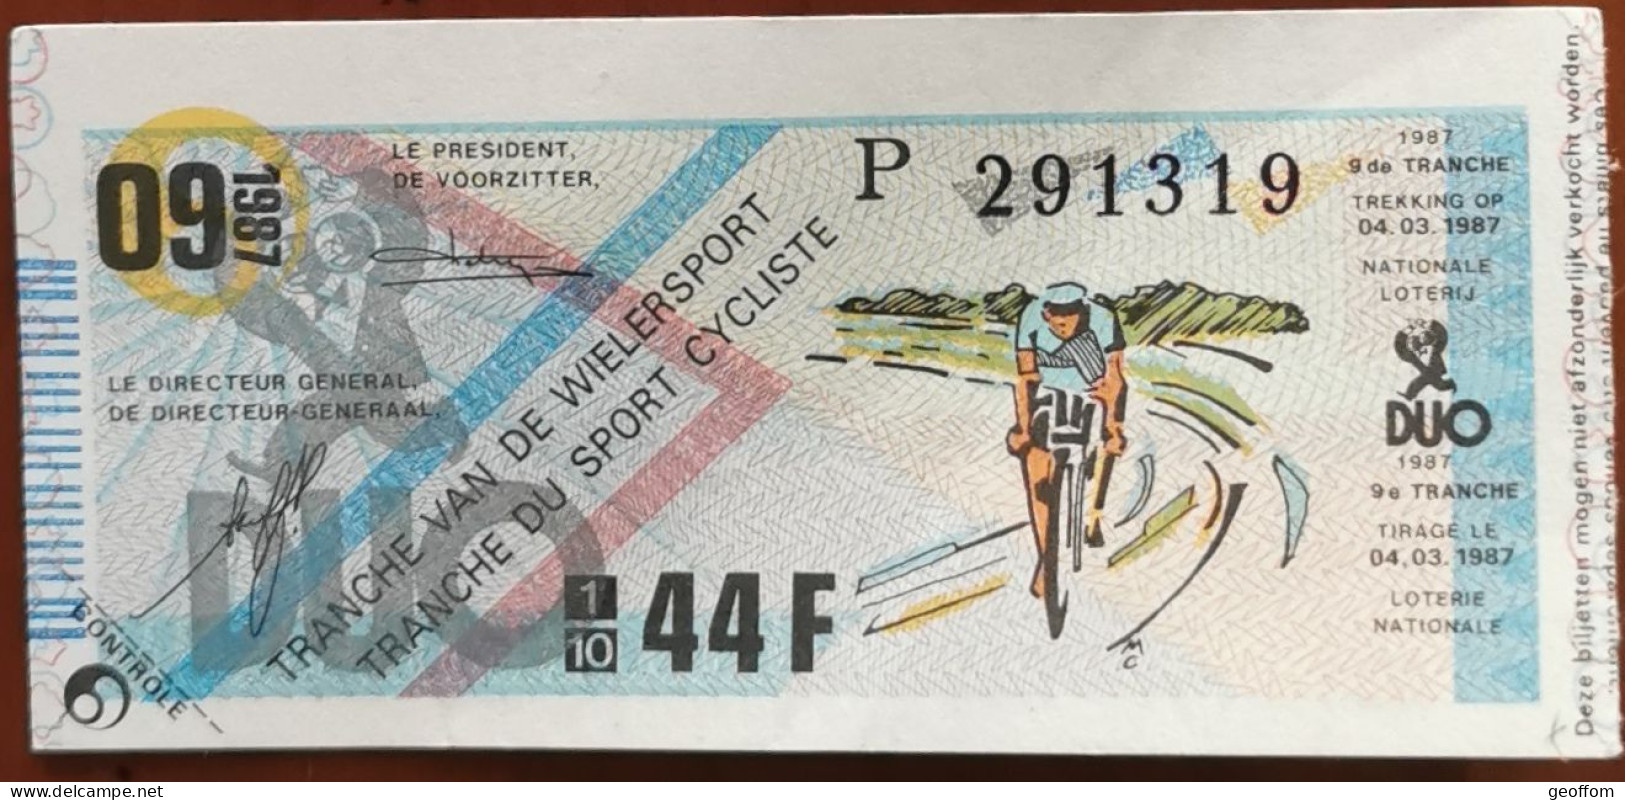 Billet De Loterie Nationale Belgique 1987 9e Tranche Du Sport Cycliste - 4-3-1987 - Billetes De Lotería